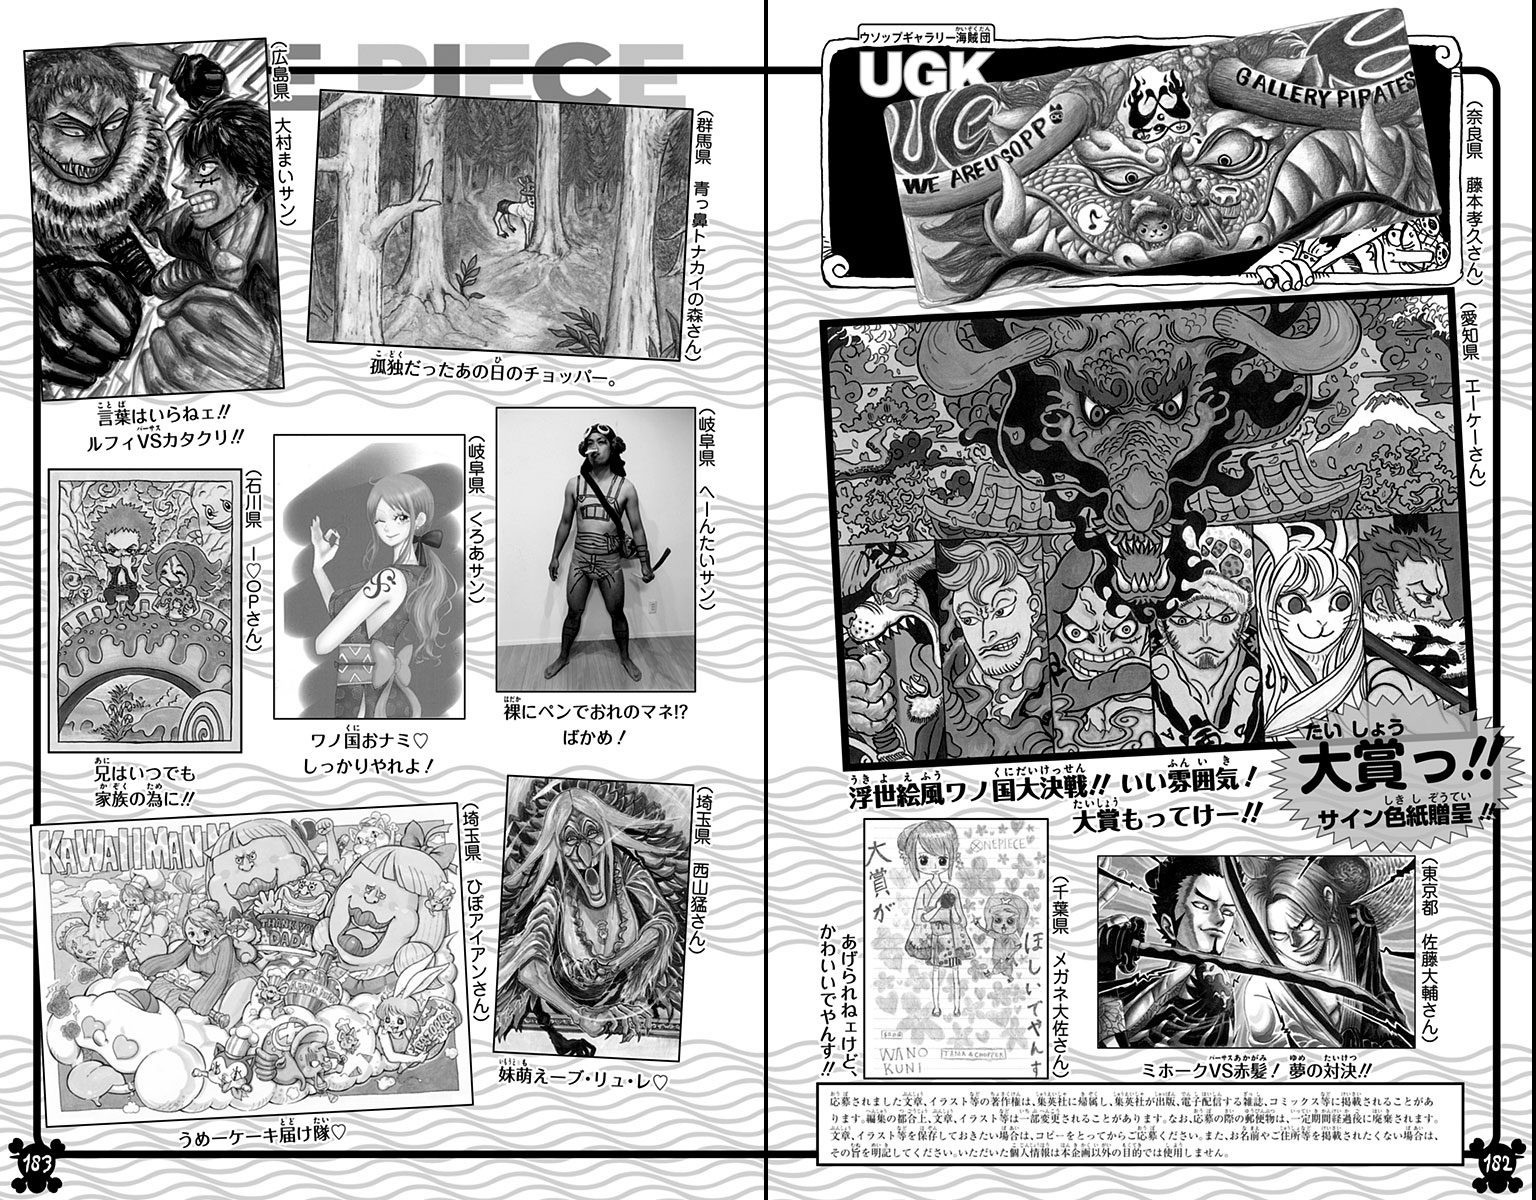 Volume 92 | One Piece Wiki | Fandom